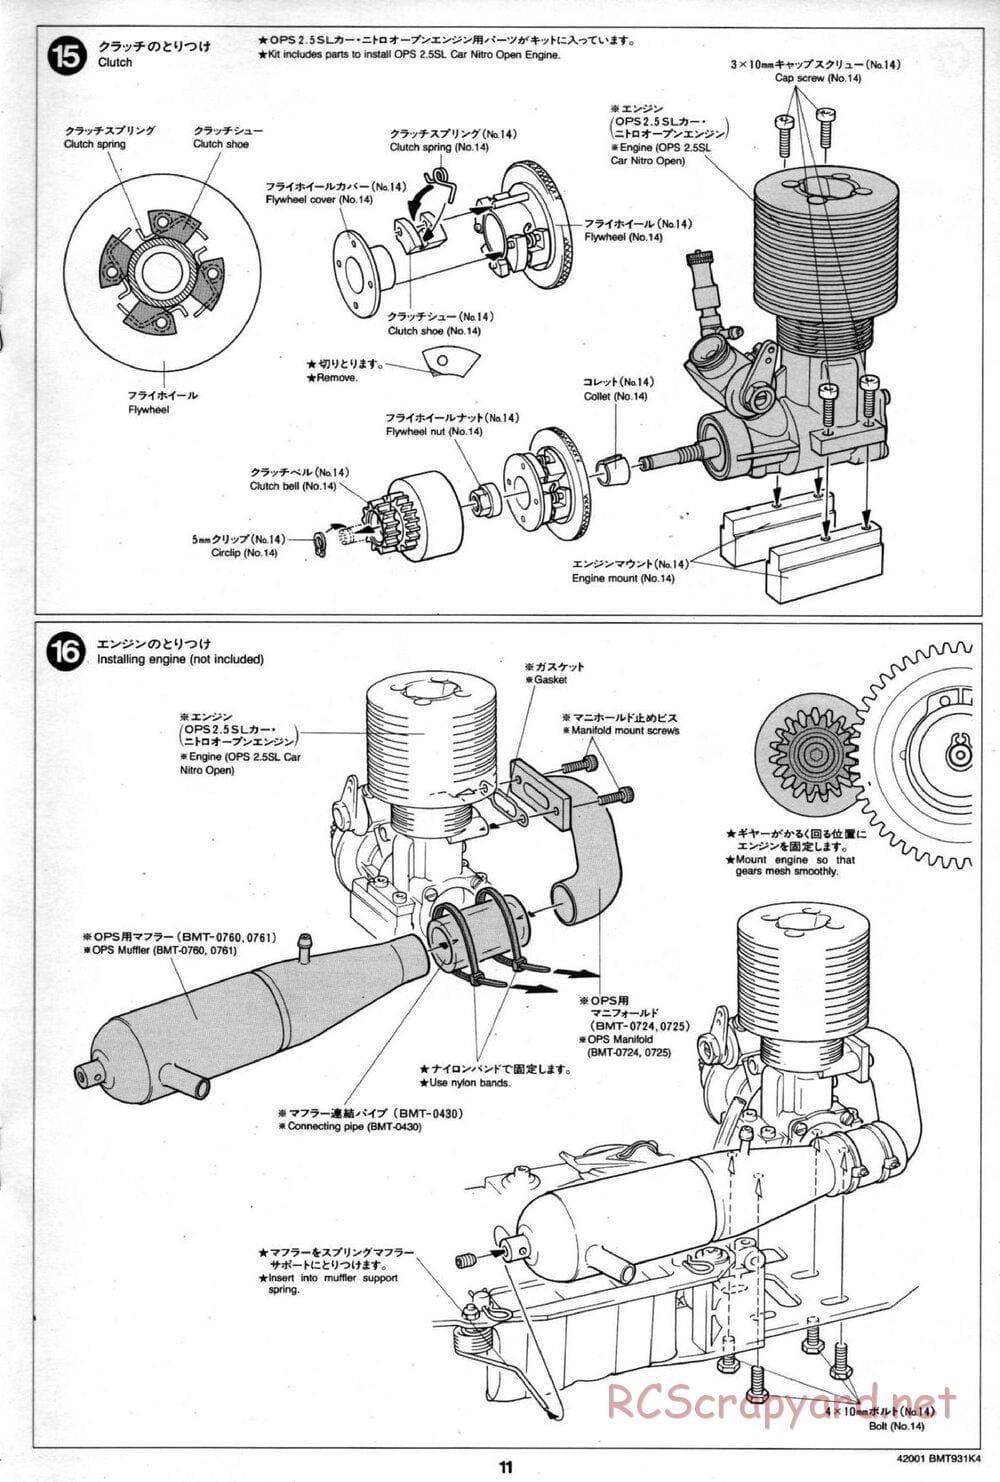 Tamiya - BMT 931 K4 Racing Chassis - Manual - Page 11